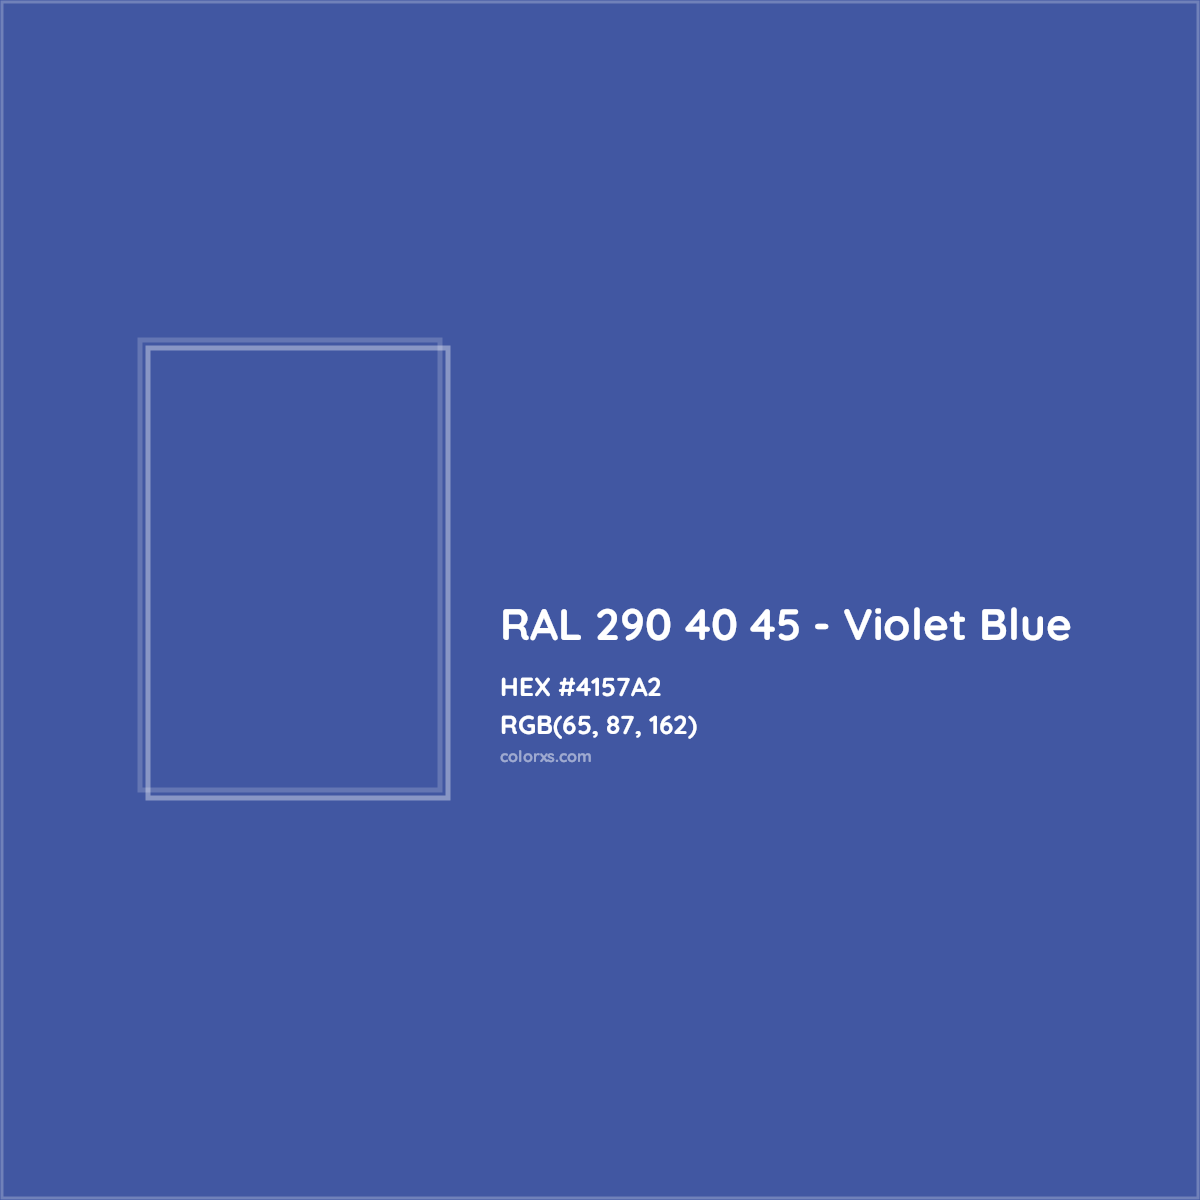 HEX #4157A2 RAL 290 40 45 - Violet Blue CMS RAL Design - Color Code